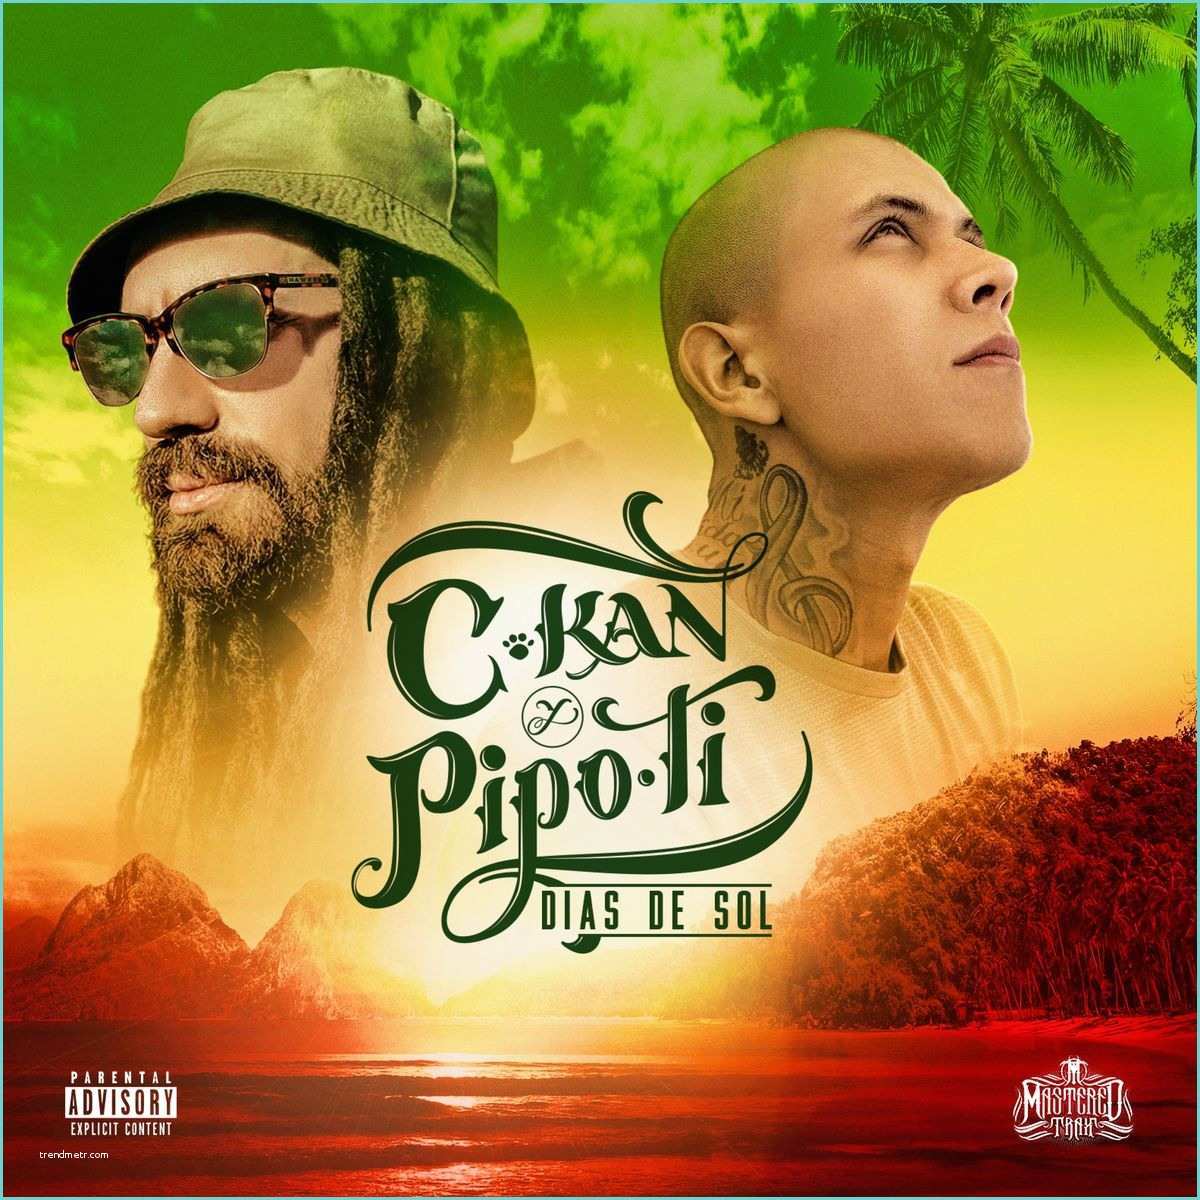 Dal De sol 2017 Descargar Musica C Kan Y Pipo Ti – Das De sol Album